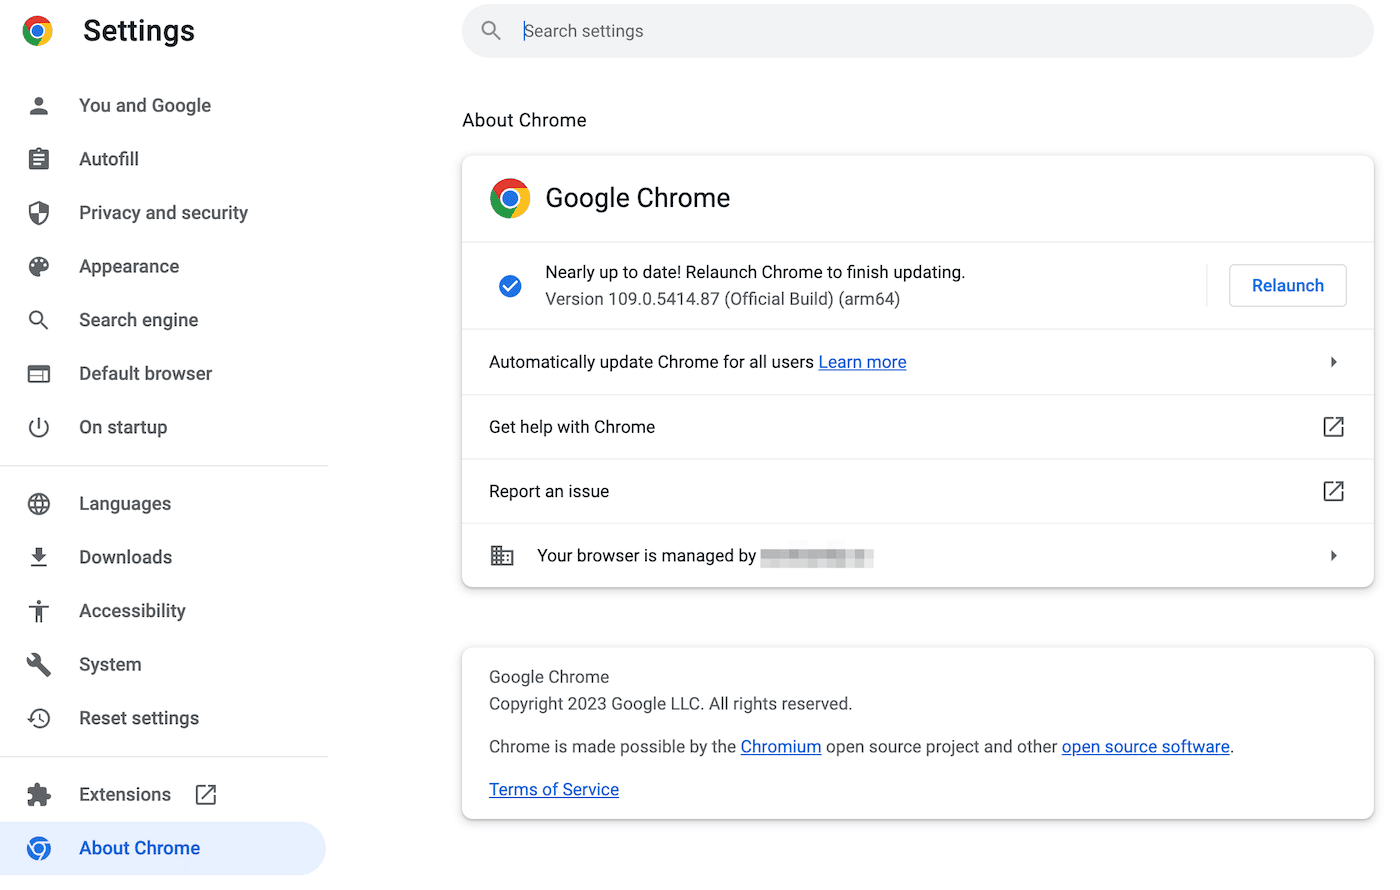 Kontrol af opdateringer til Google Chrome